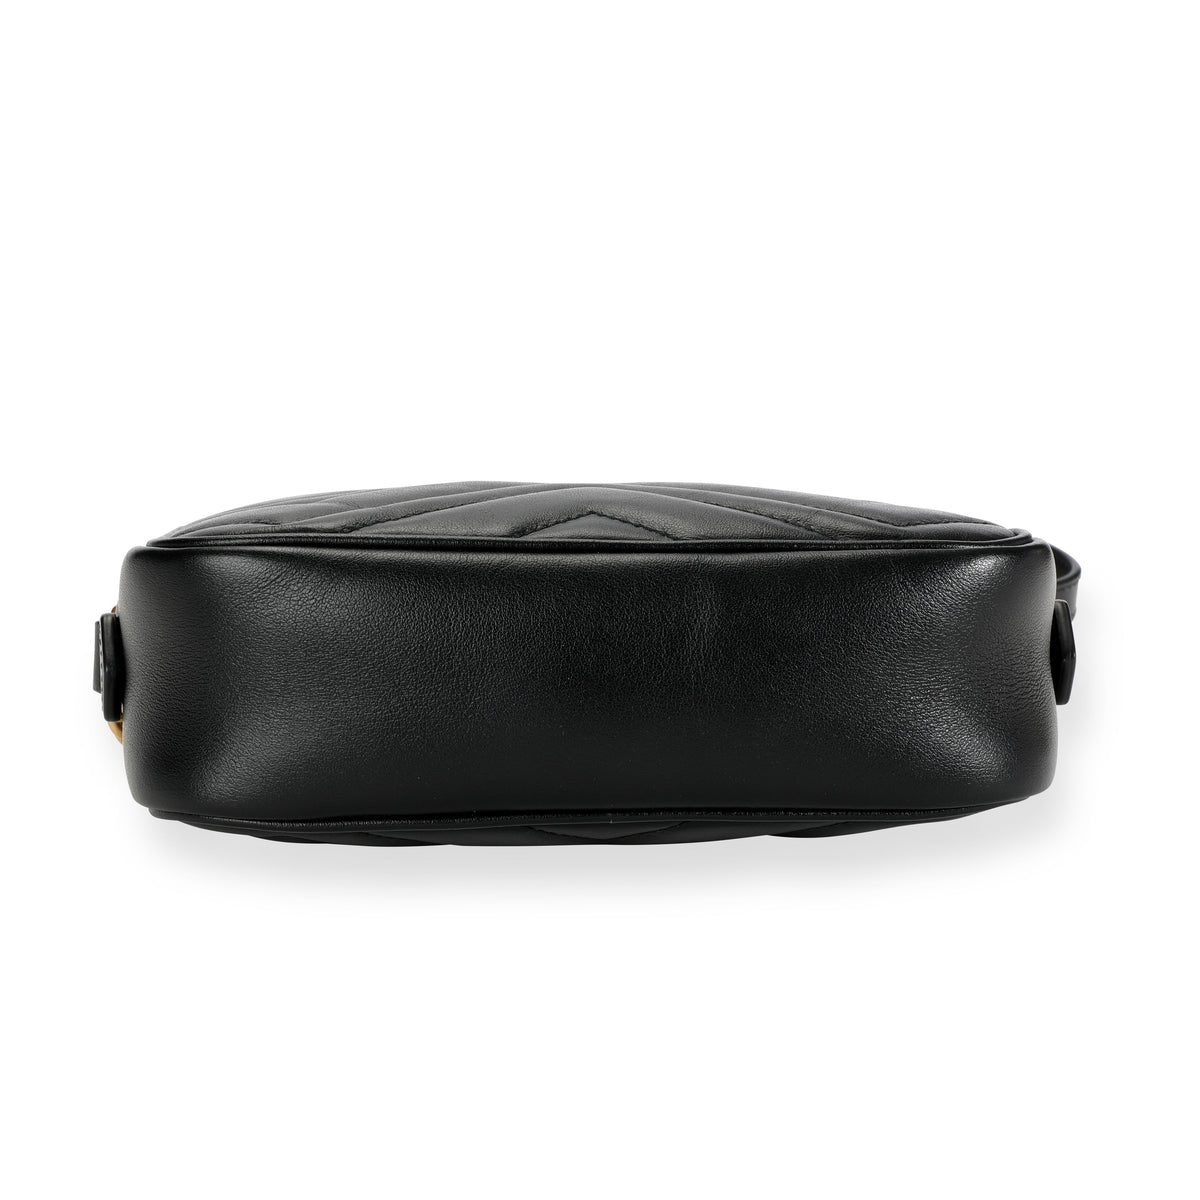 Gucci Black Matelassé Leather Small GG Marmont Shoulder Bag